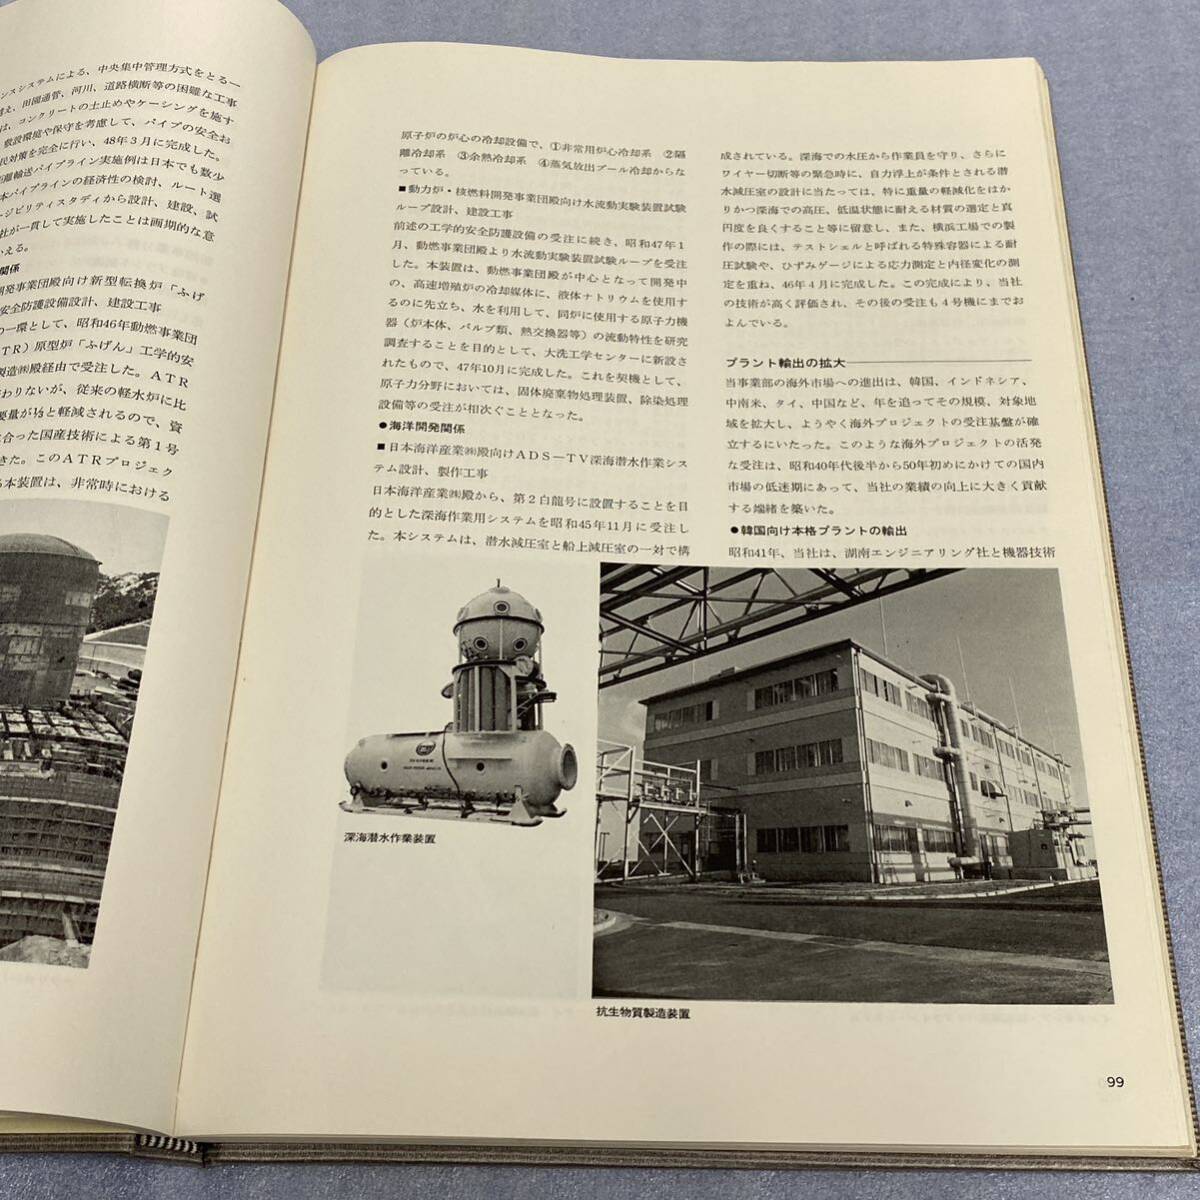 * Niigata .. место соответствующие книги 3 шт. совместно комплект 80 год история 70 год история Niigata металлоконструкция место структура судно море . все Niigata одиночный один подлинная вещь не продается 